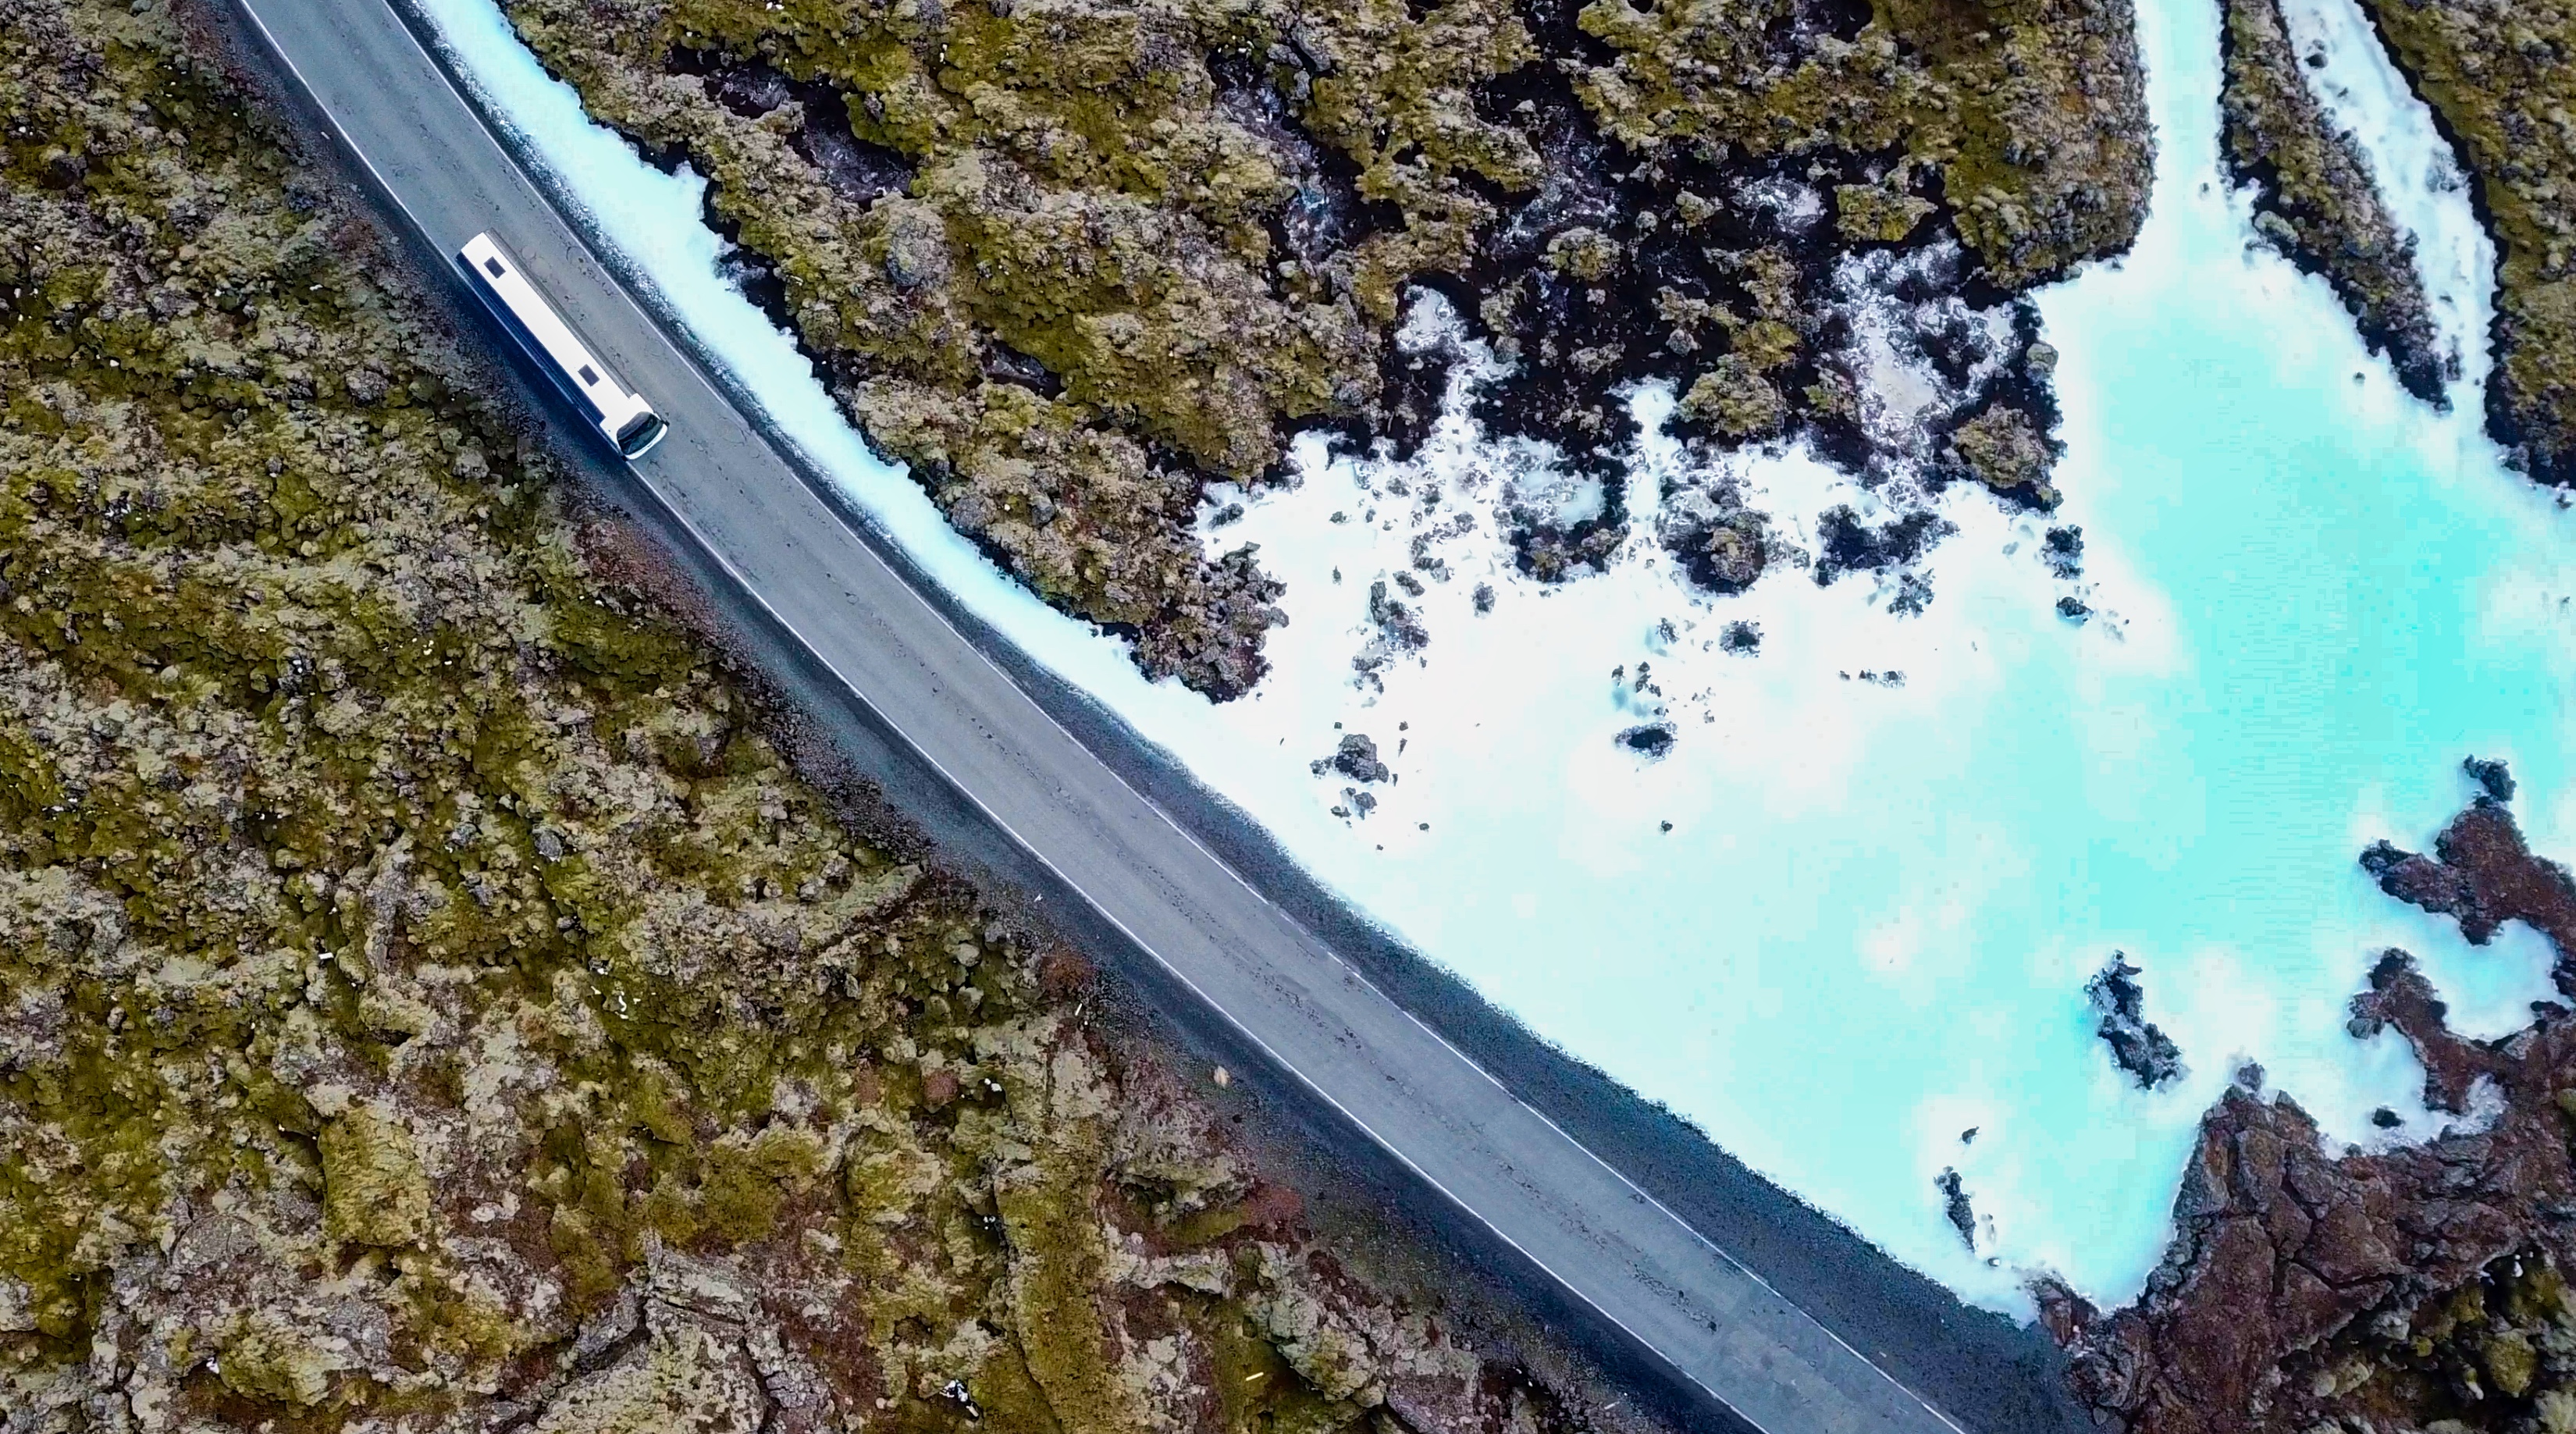 Fahre durch die felsigen Landschaften der Halbinsel Reykjanes, um die luxuriöse Blaue Lagune zu erreichen.